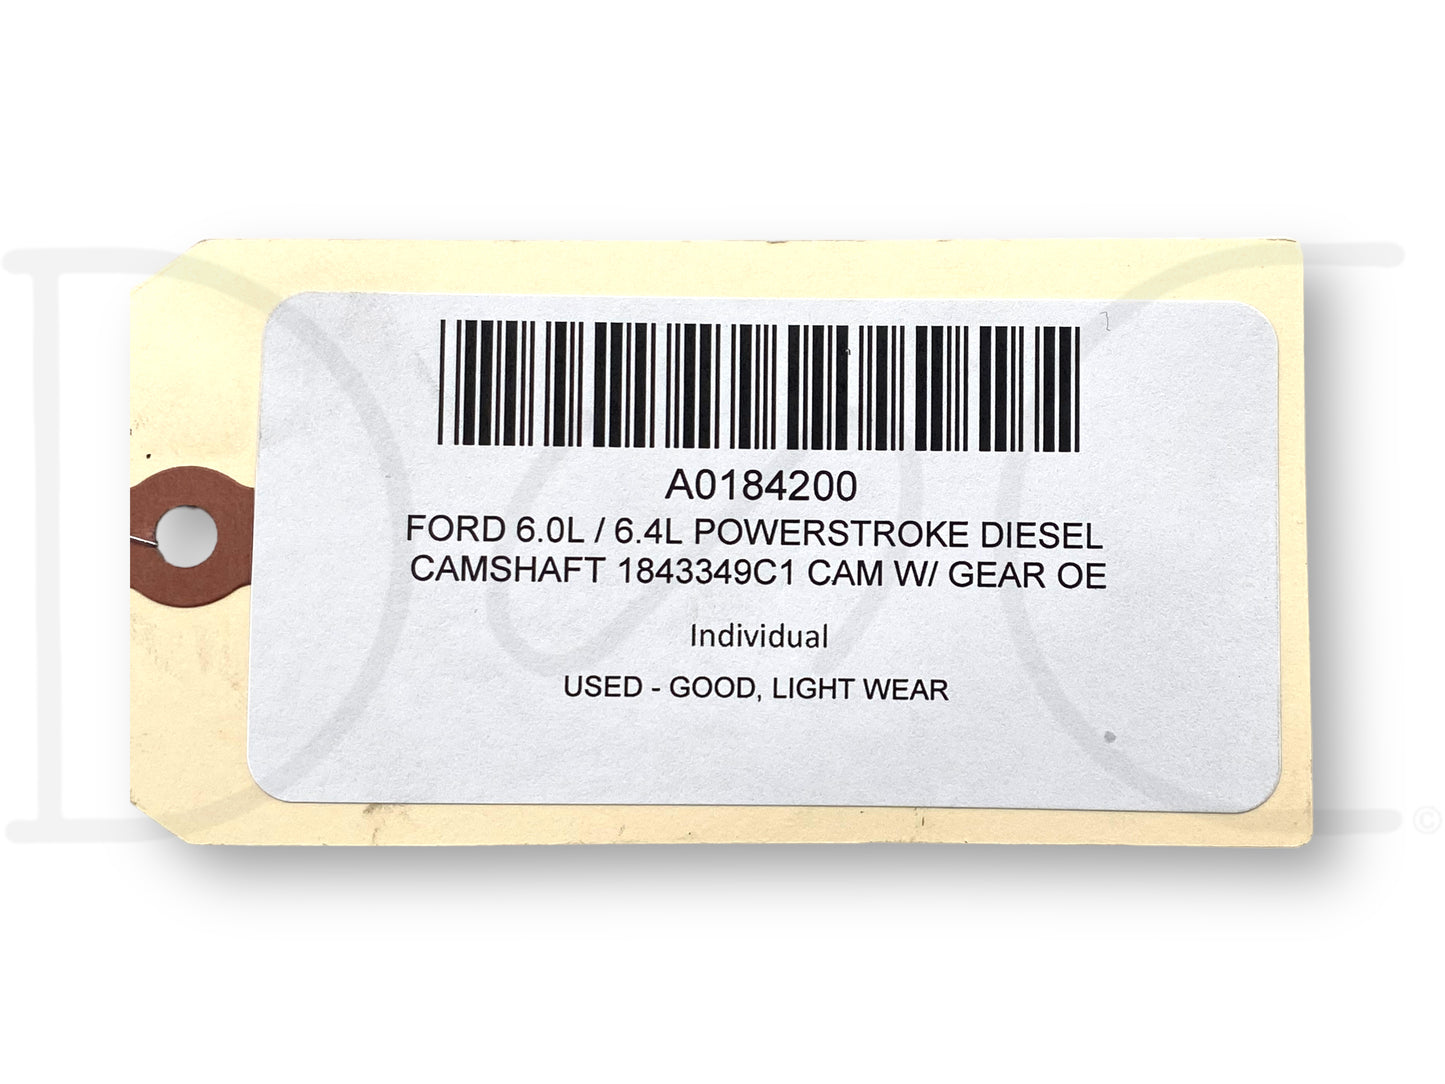 Ford 6.0L / 6.4L Powerstroke Diesel Camshaft 1843349C1 Cam W/ Gear OE